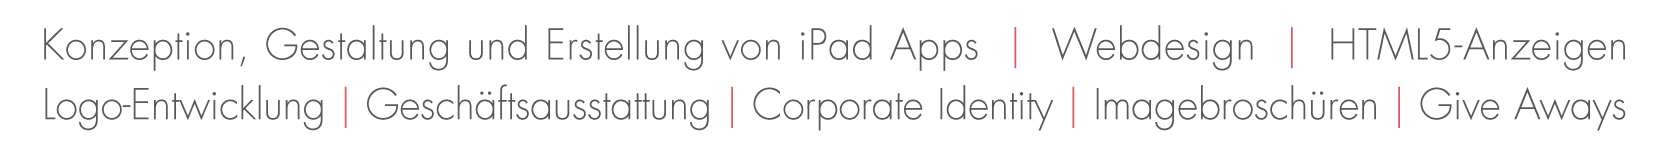 Konzeption, Gestaltung und Erstellung von iPad Apps | Webdesign | HTML5-Anzeigen | Logo-Entwicklung | Geschäftsausstattung | Corporate Identity | Imagebroschüren | Give Aways